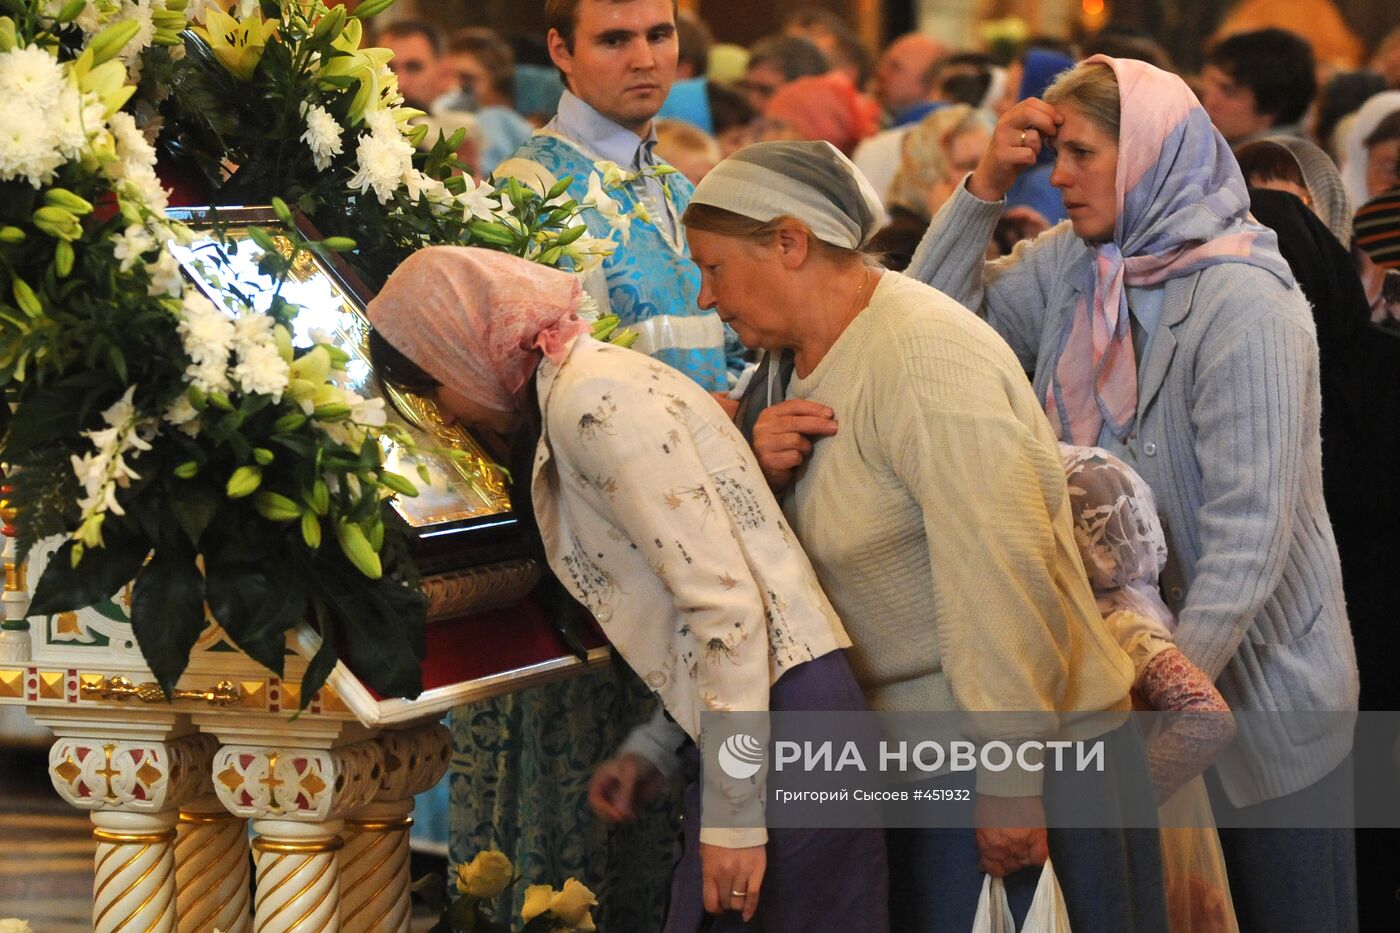 Чудотворная икона Божией Матери "Знамение" доставлена в Москву